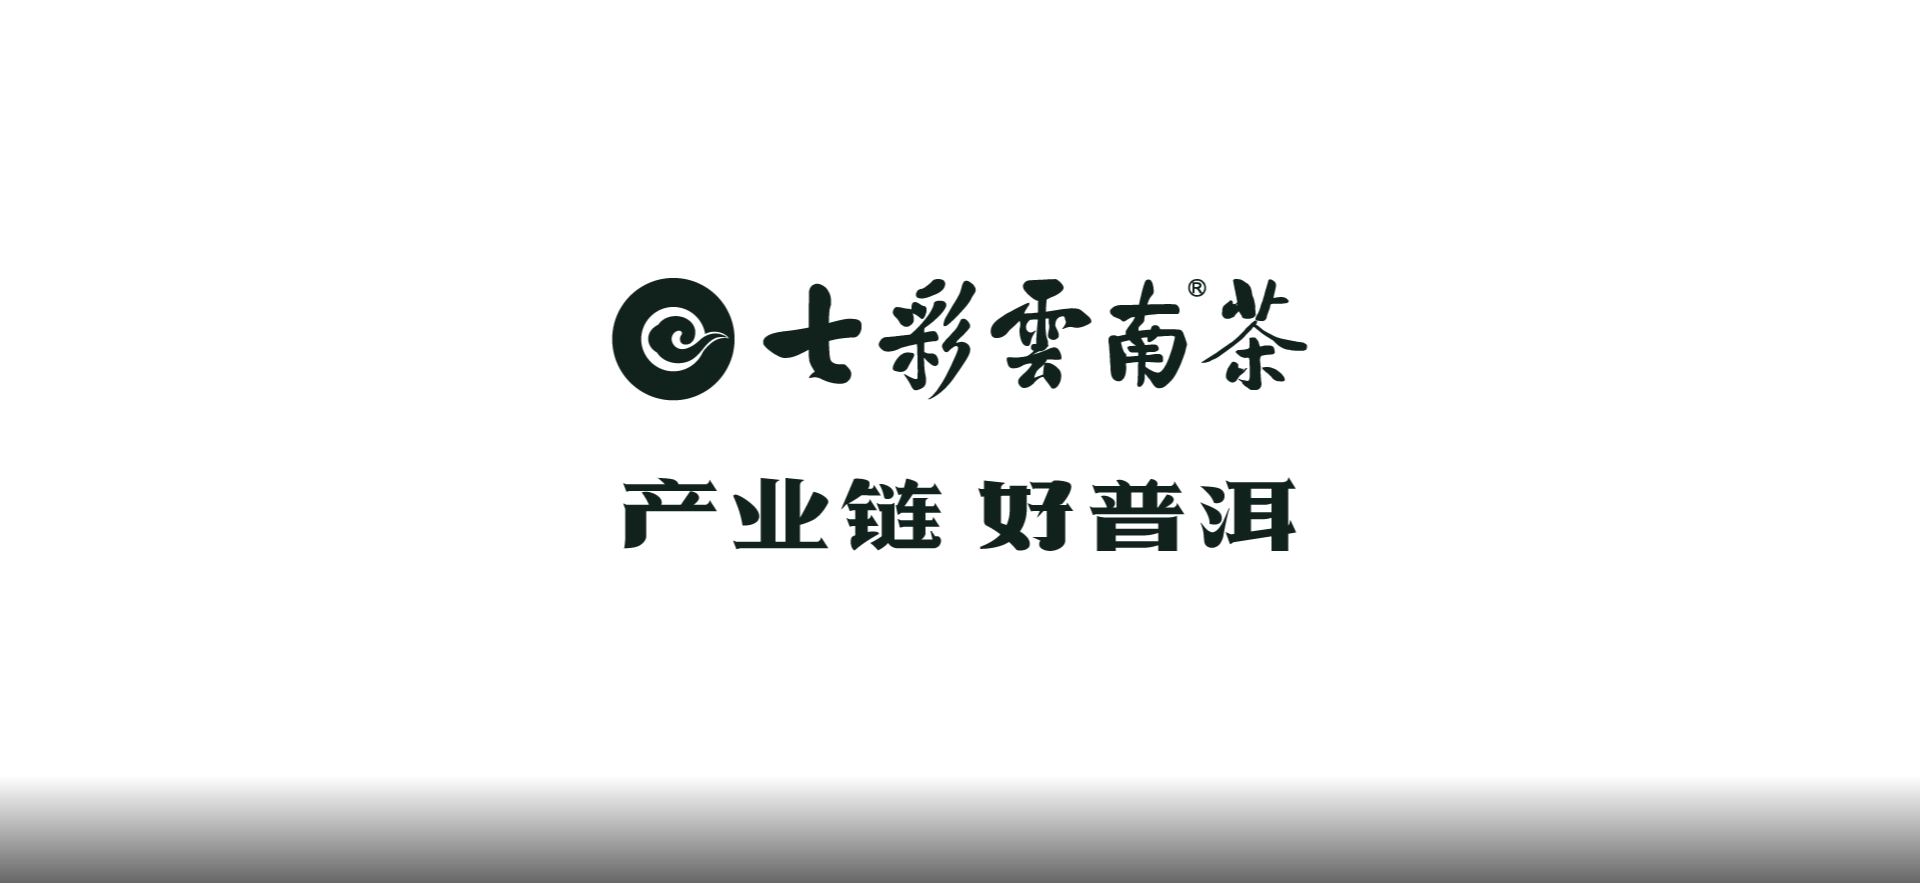 七彩云南®茶——品牌长画卷背后的创作故事（二）